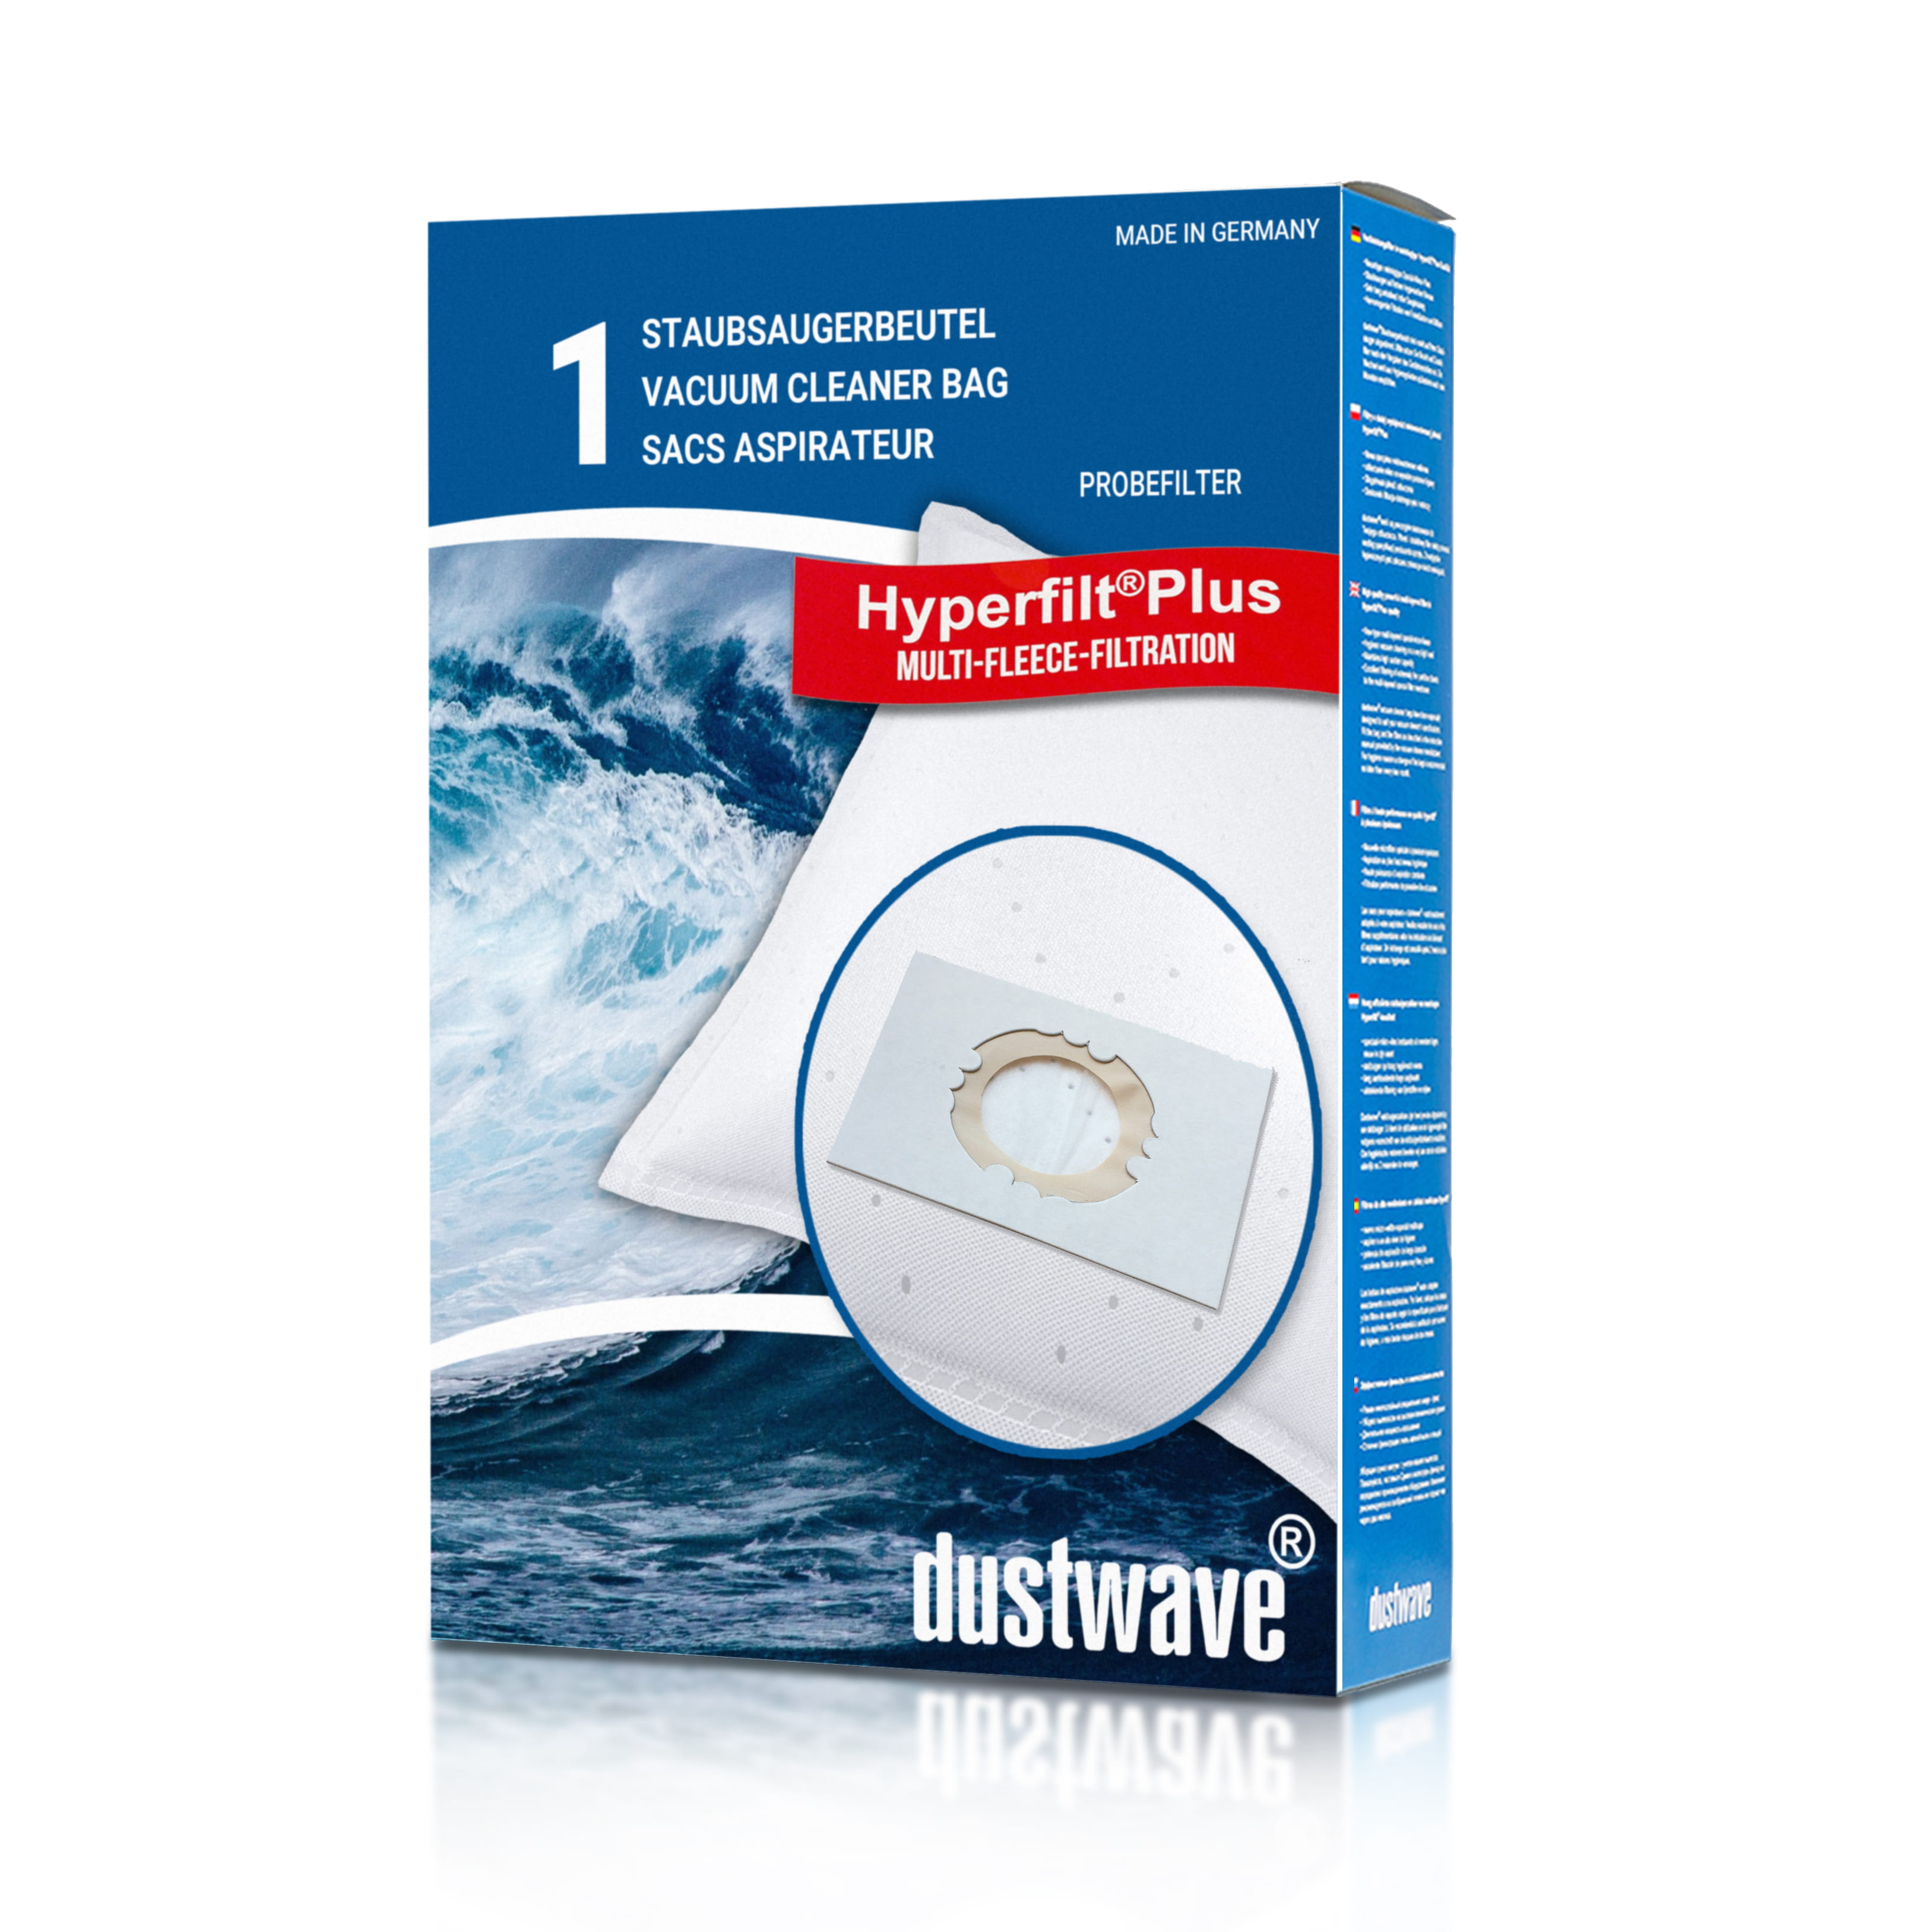 Dustwave® 1 Staubsaugerbeutel für Blue Sky BIE 1400 - hocheffizient, mehrlagiges Mikrovlies mit Hygieneverschluss - Made in Germany